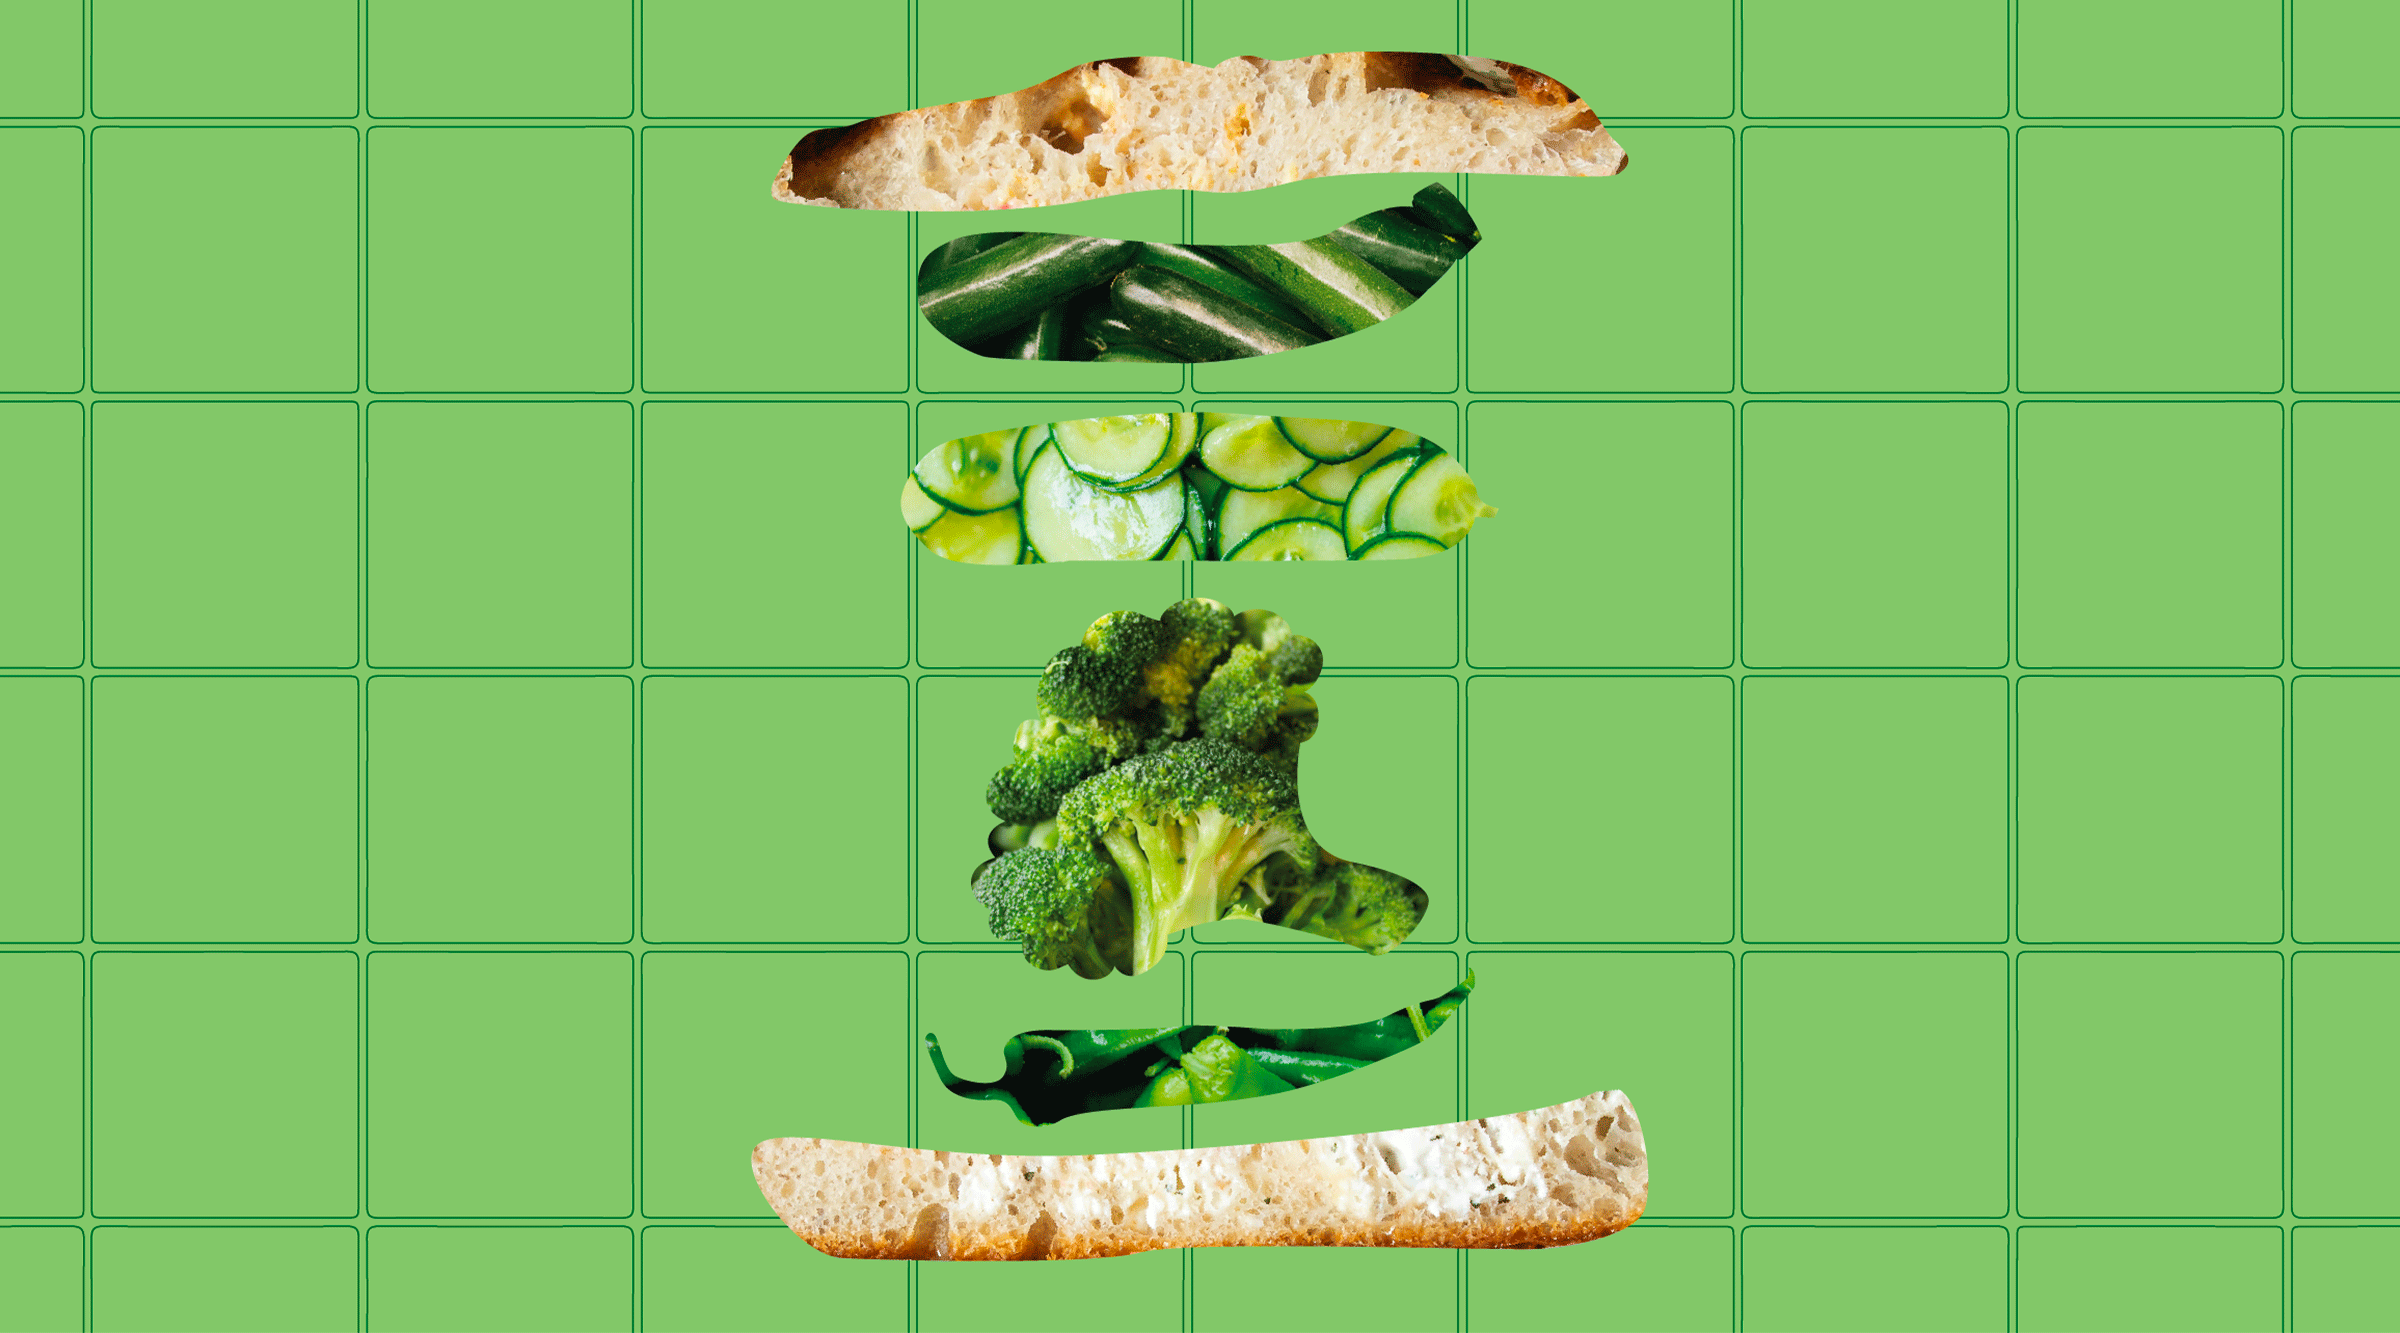 Le sandwich qui va vous réconcilier avec le brocoli